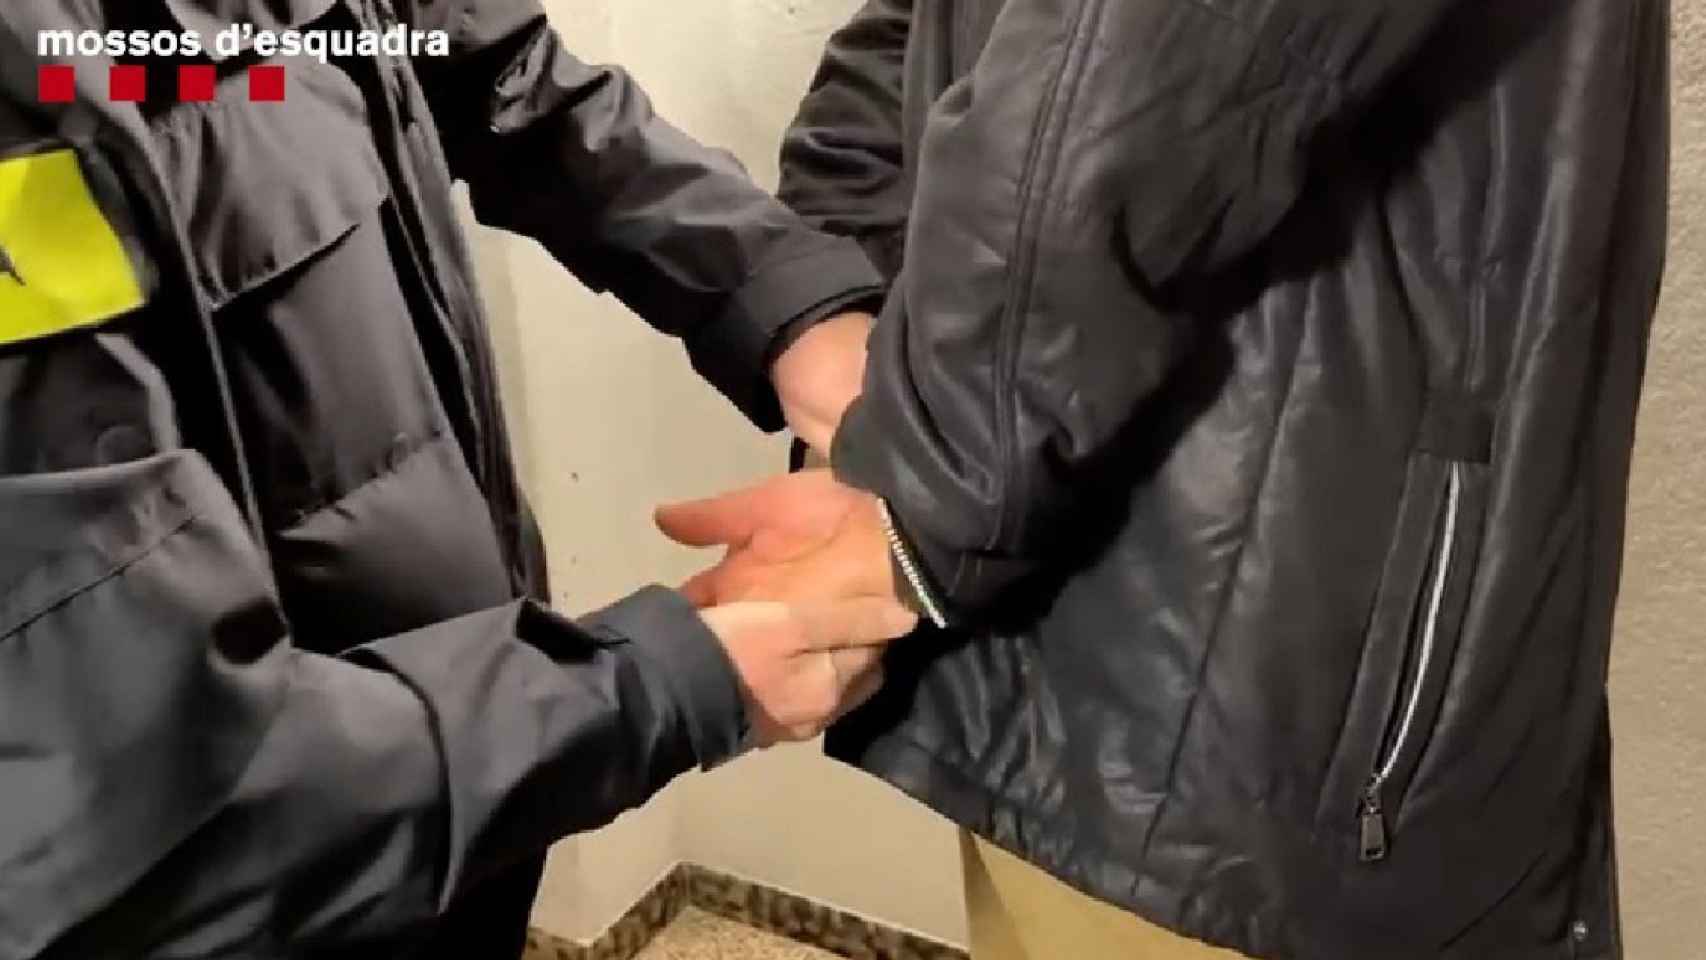 Los Mossos d'Esquadra efectúan una detención como la del exprofesor de Valls acusado de abusos sexuales a alumnos / MOSSOS